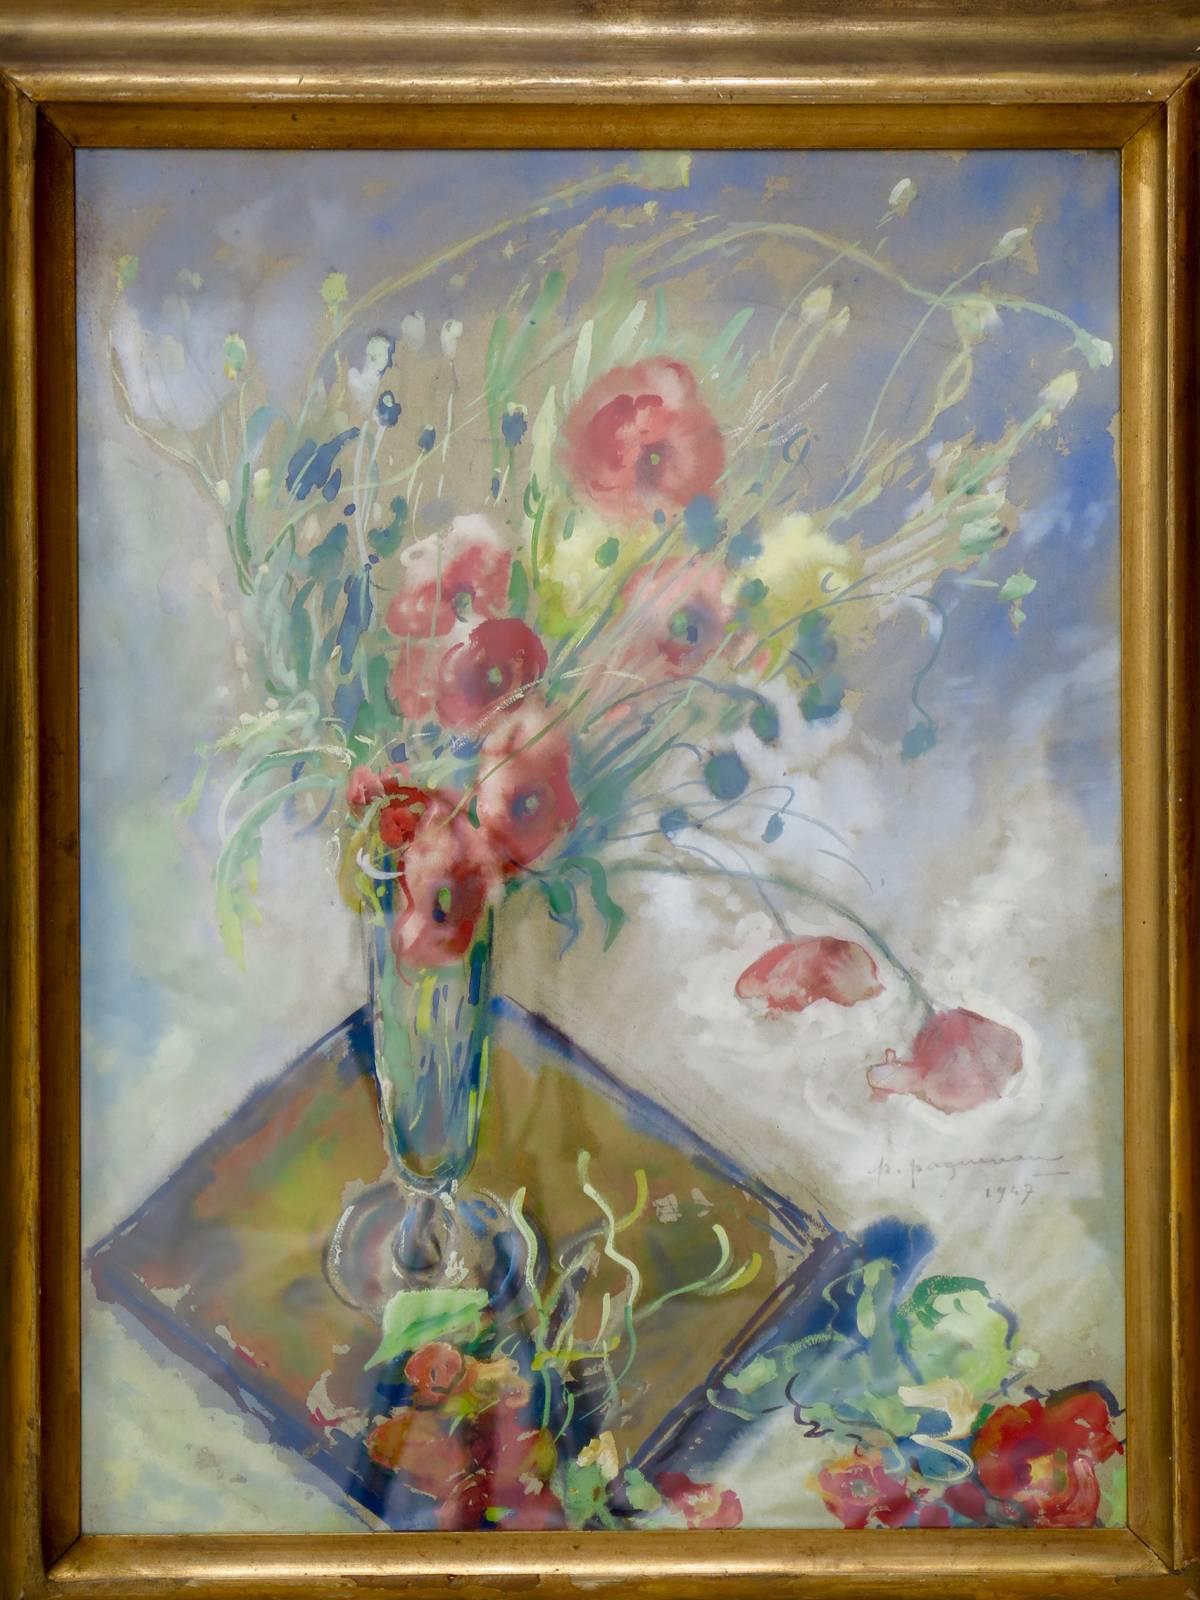 Aquarelle représentant un vase de fleurs de pavot soufflées par le vent. De belles couleurs.

Signé P. Paquereau, 1947.

Paul Paquereau (1871- 1956) était un peintre et décorateur de théâtre français, contemporain d'artistes tels que Raoul Dufy,